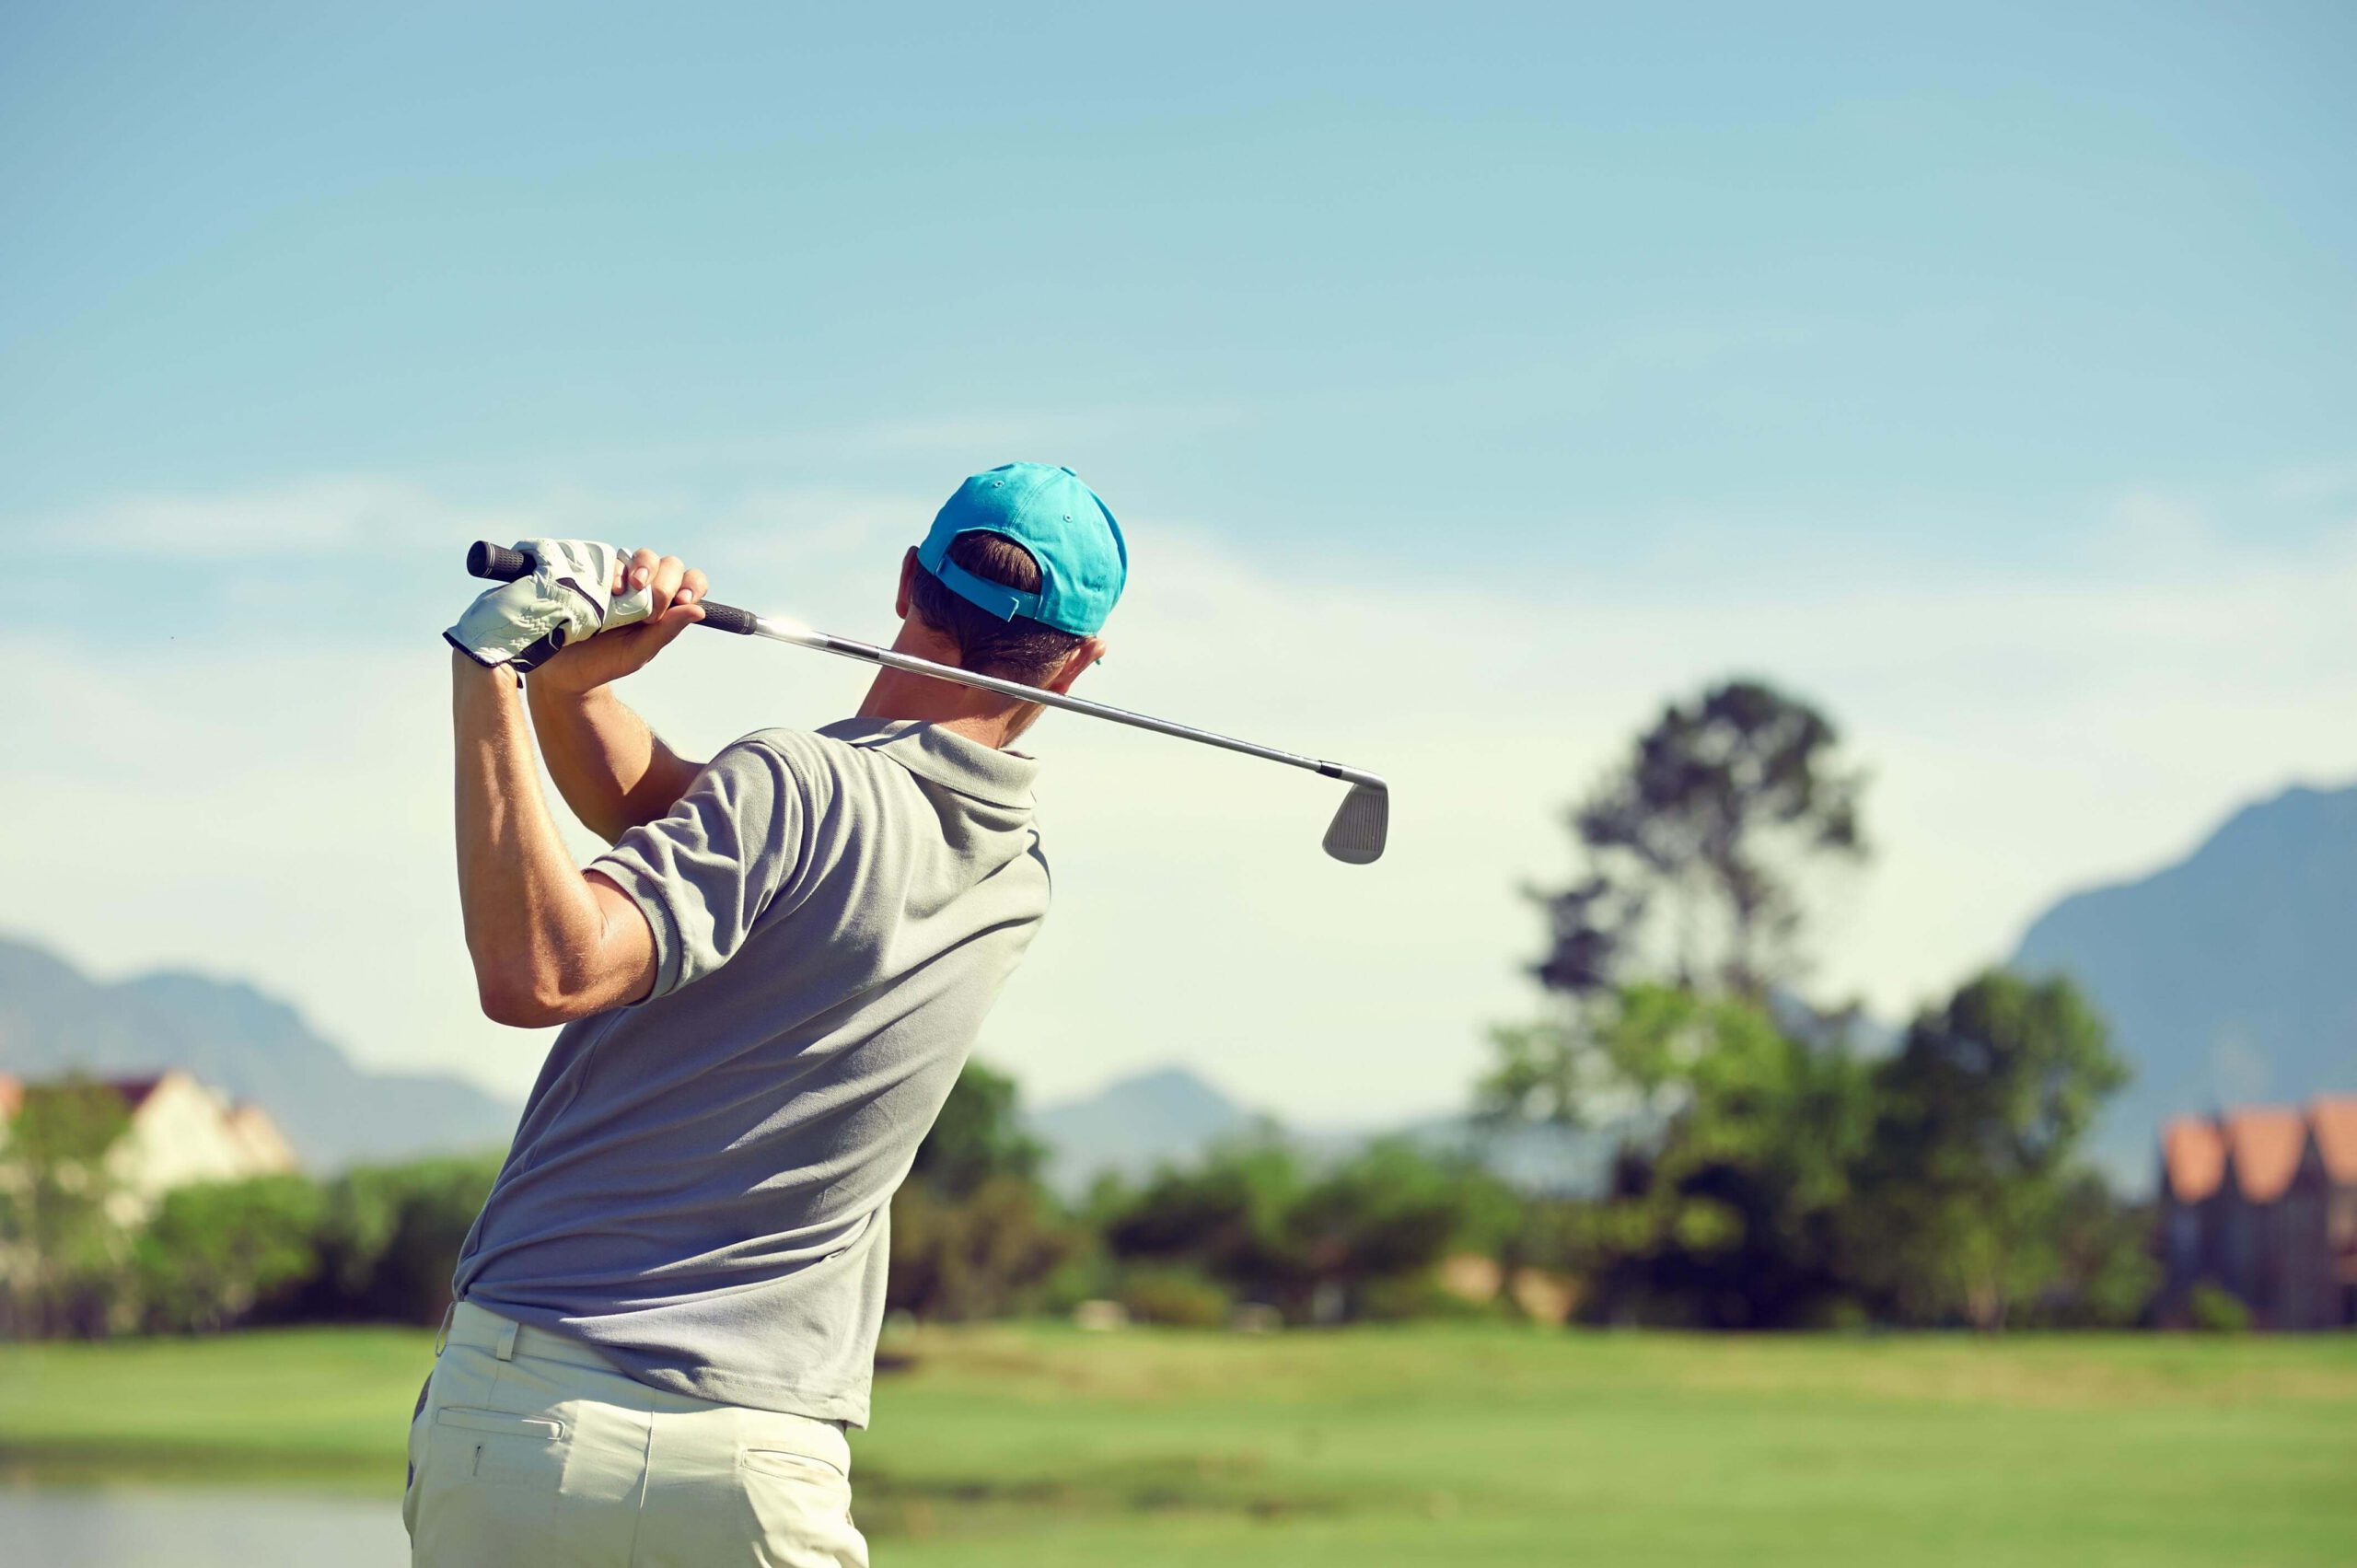 Verbessern Sie Ihr Golfspiel mit Personal Training und gezielter Übung